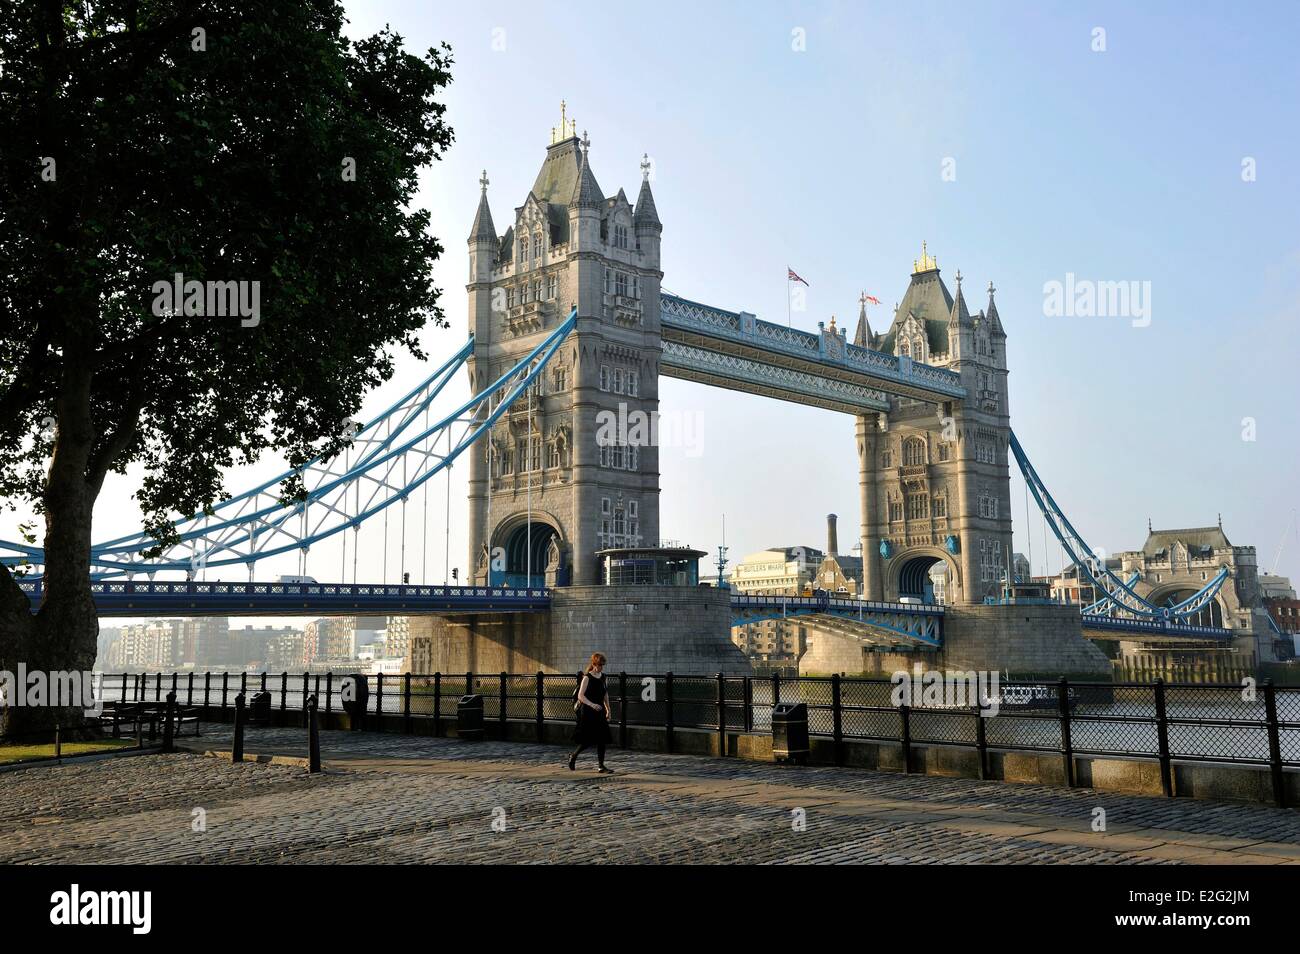 Regno Unito Londra Tower Bridge un ponte che attraversa il Tamigi tra i distretti di Southwark e Tower Hamlets Foto Stock